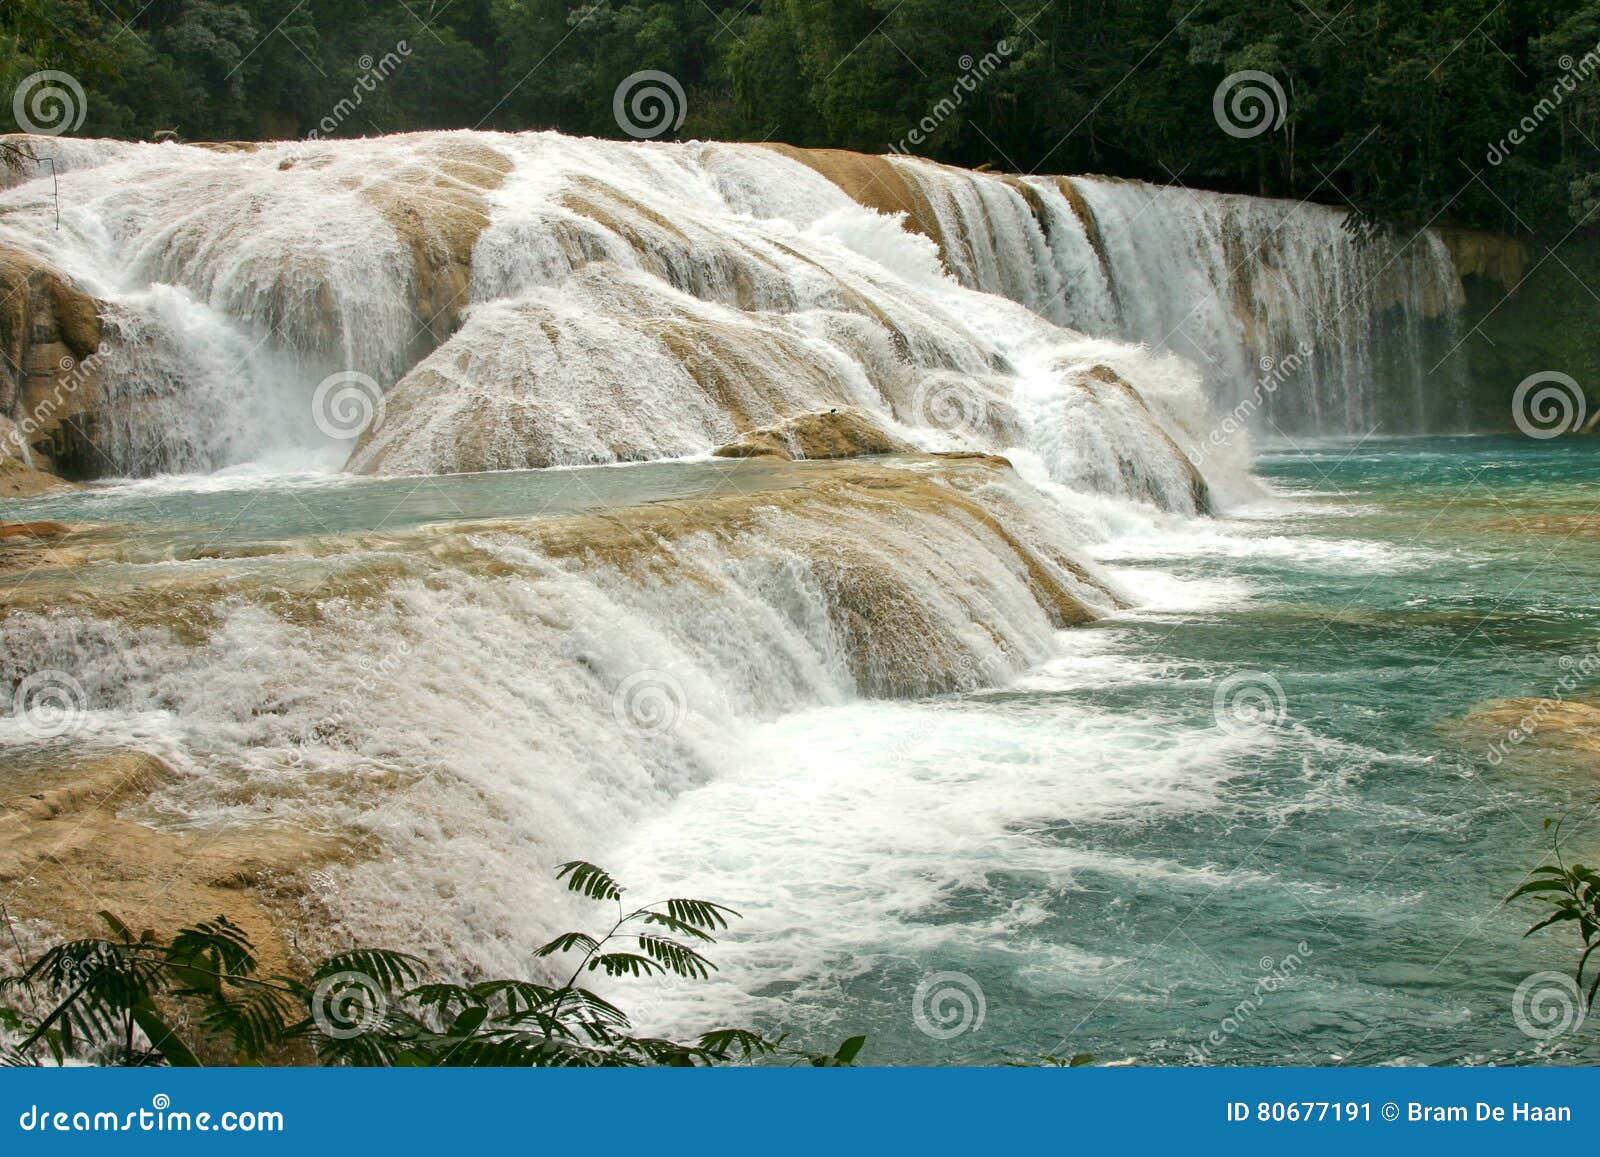 waterfalls cataratas de agua azul mexico